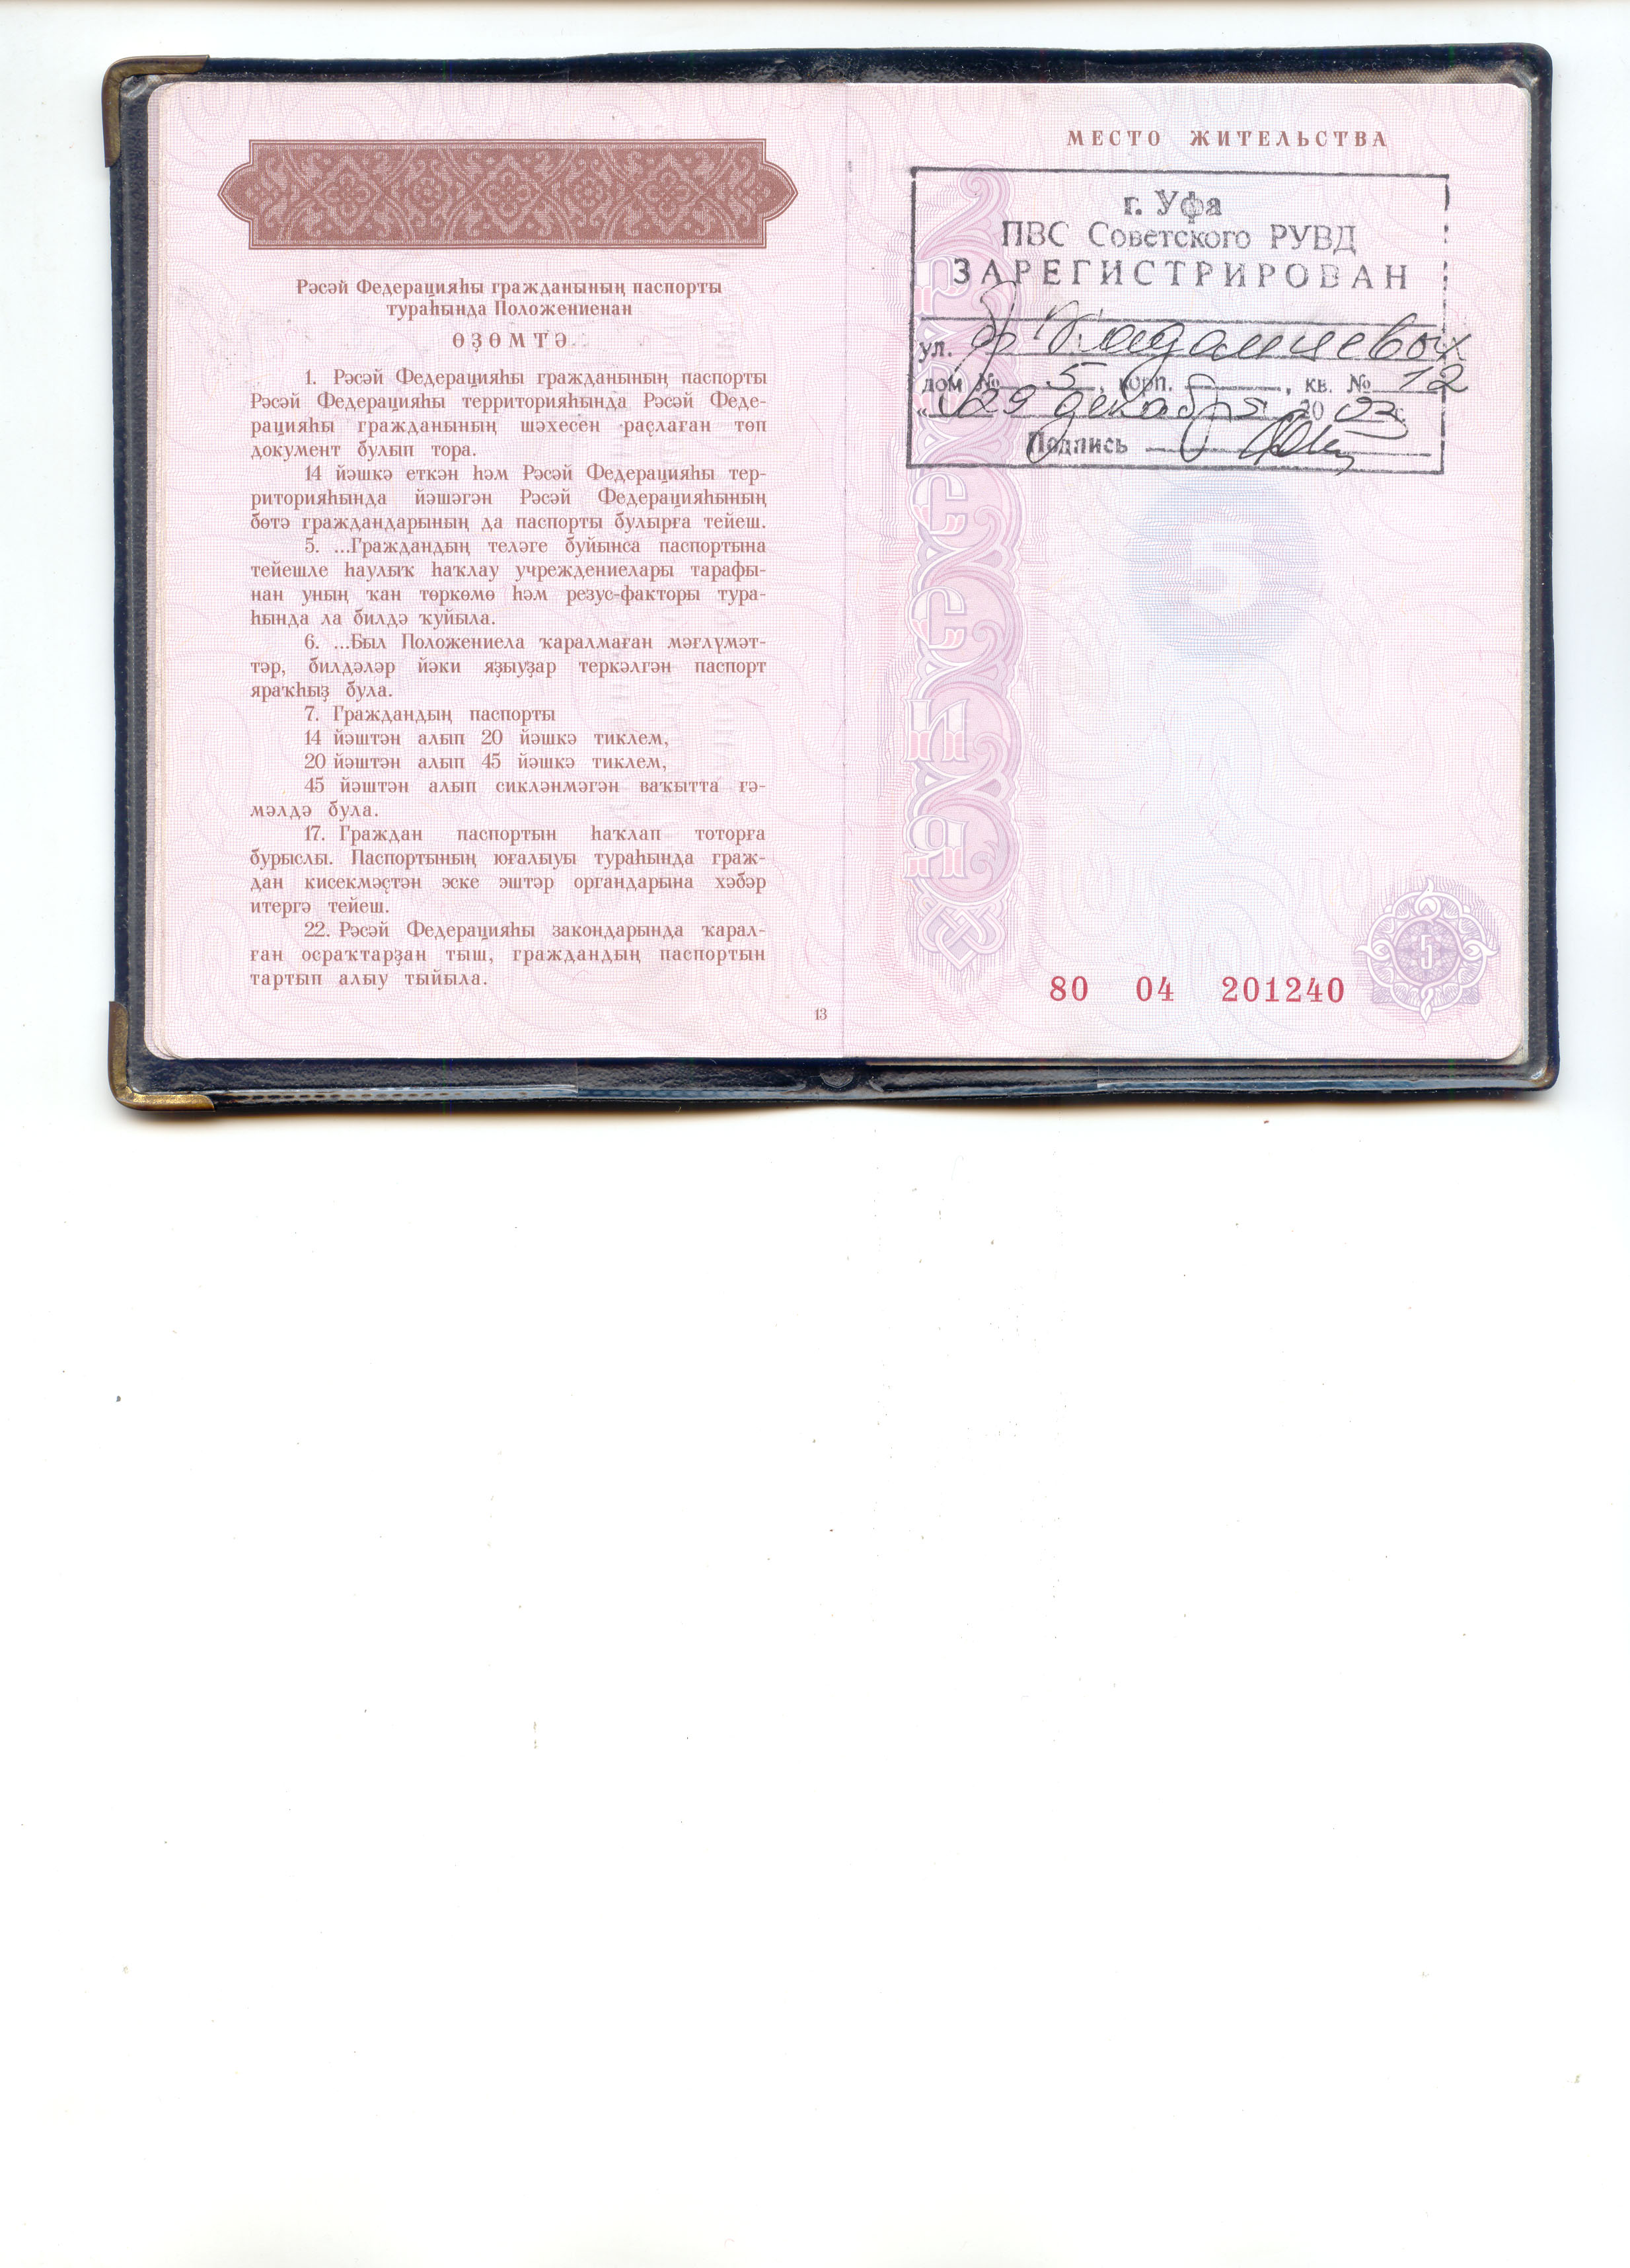 фотография первого разворота паспорта